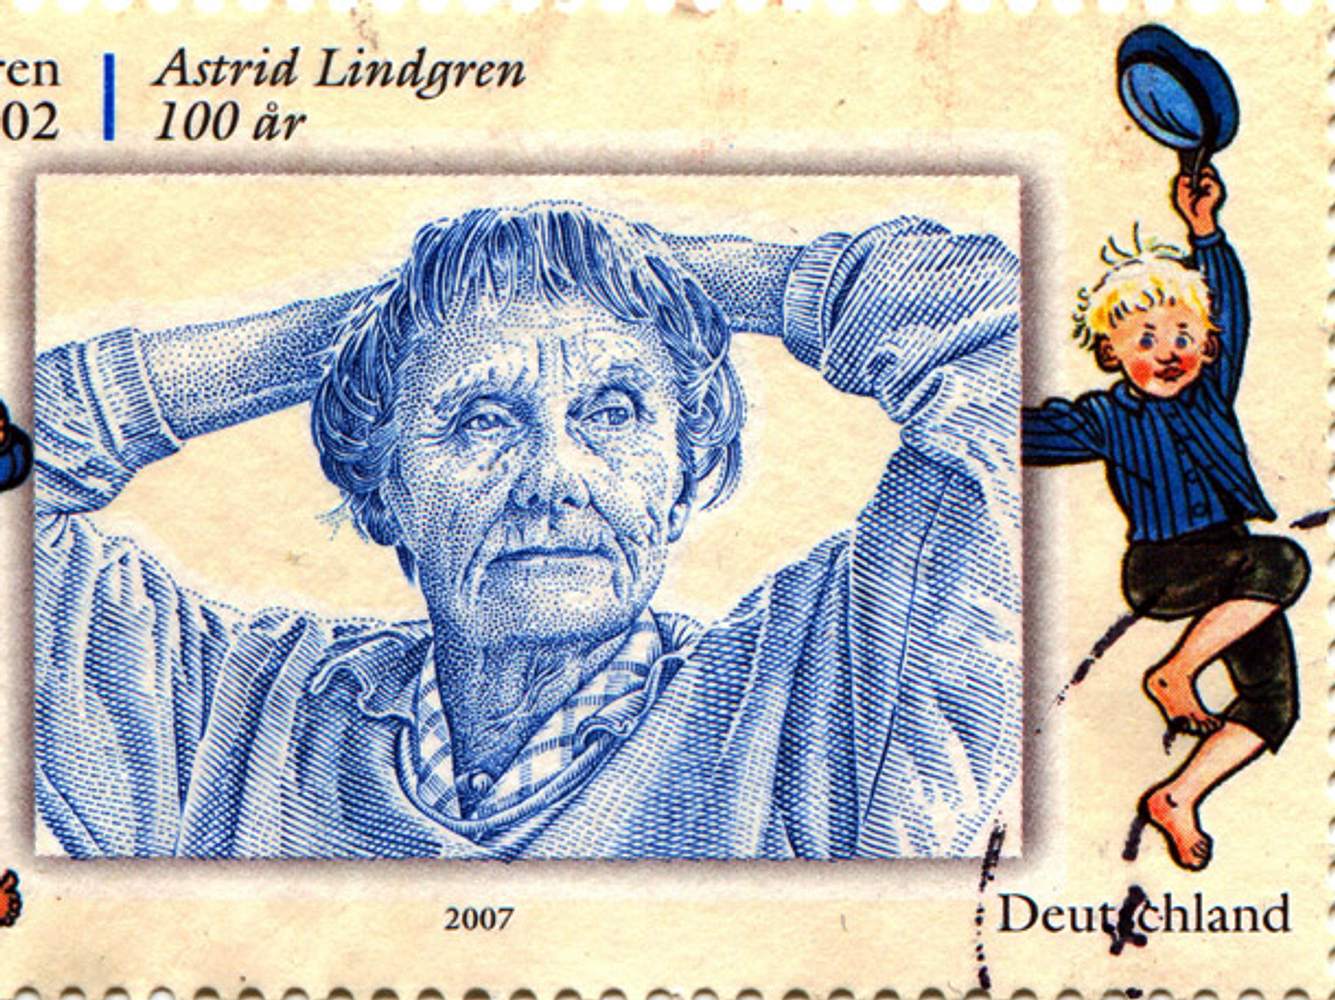 Astrid Lindgren ist die berühmteste Schriftstellerin Schwedens